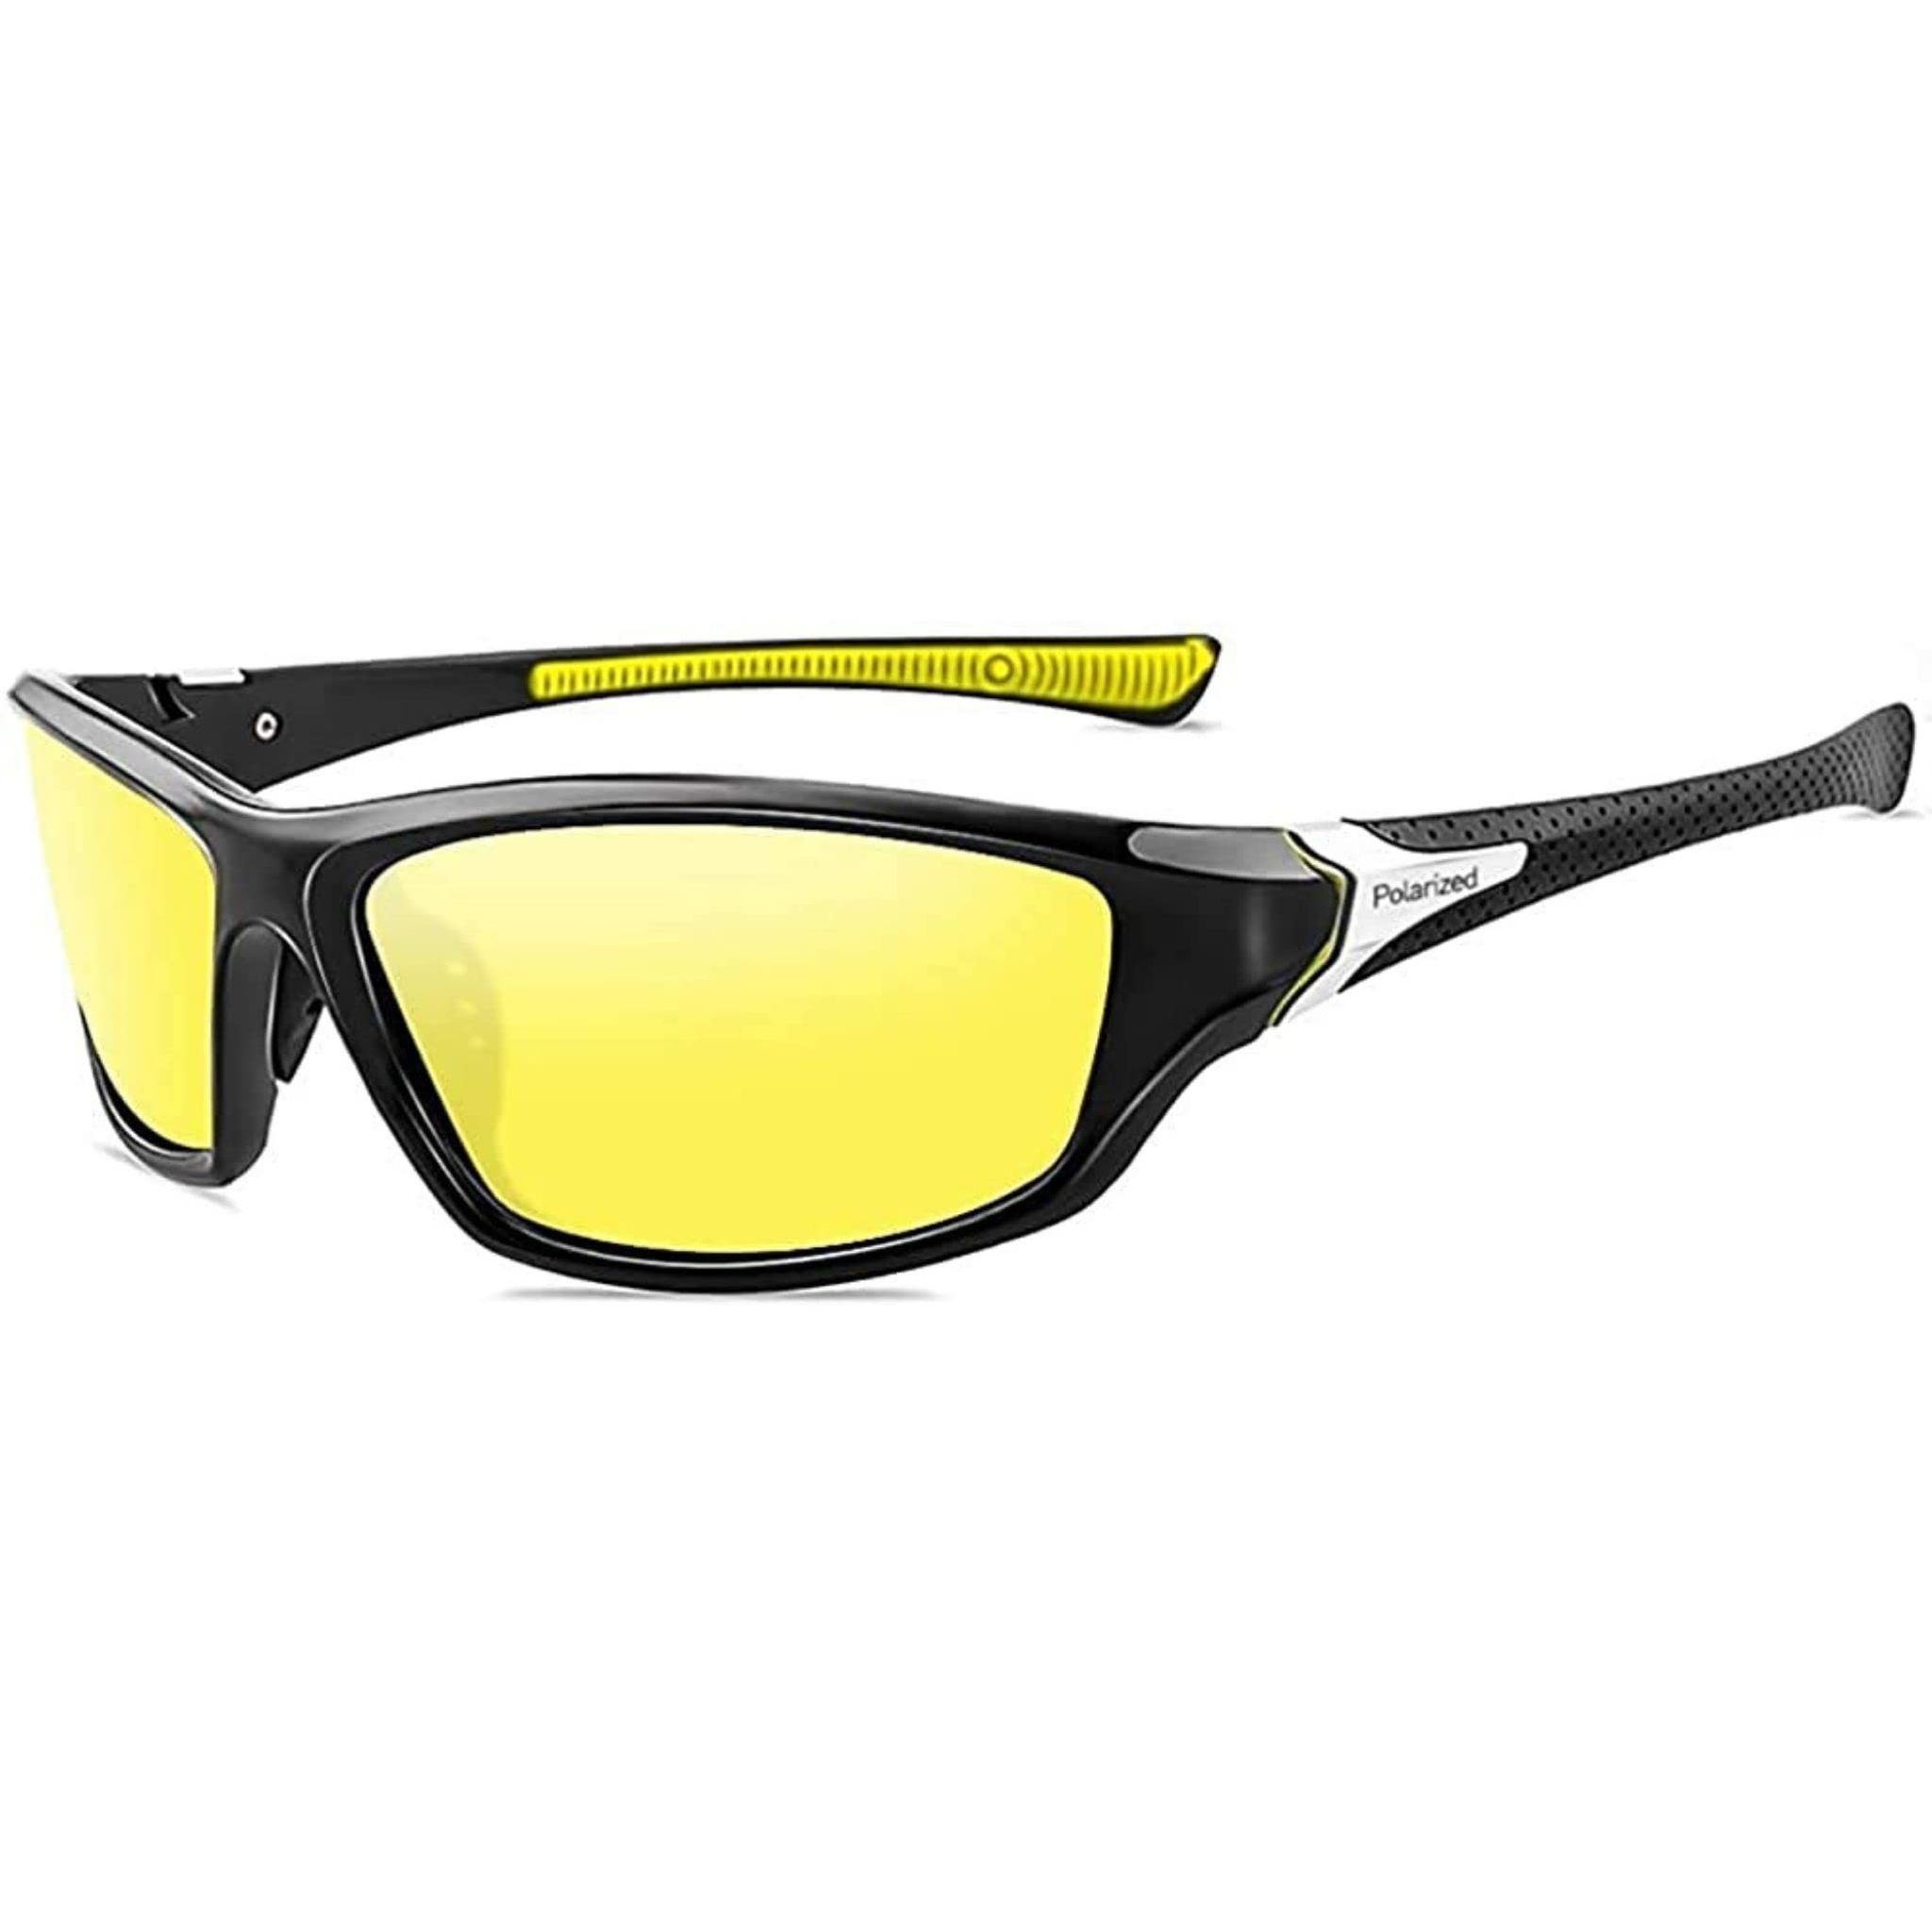 Sunglasses for Men Women Latest Stylish,Large Size Rectangular Sunglasses  UV Protection